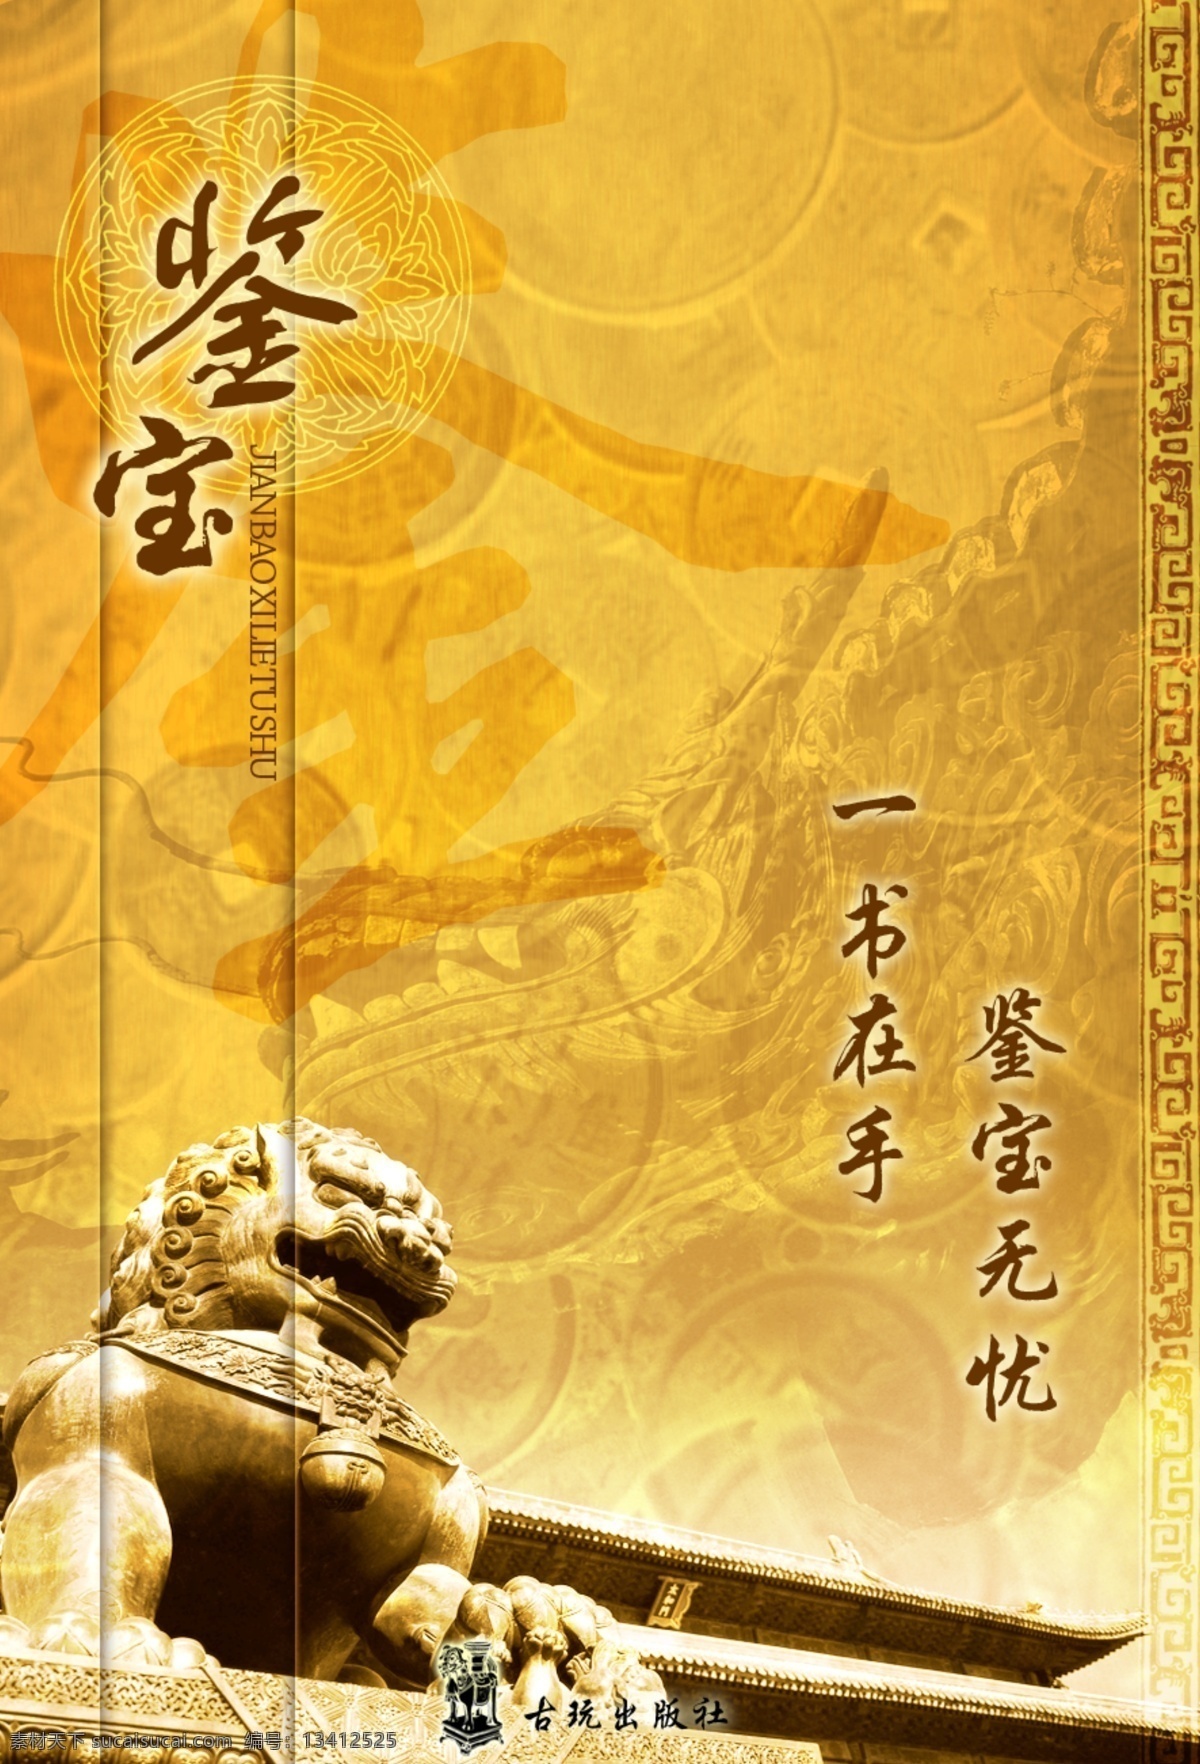 书籍封面 鉴宝书籍 石狮 中国古代建筑 包装设计 广告设计模板 源文件